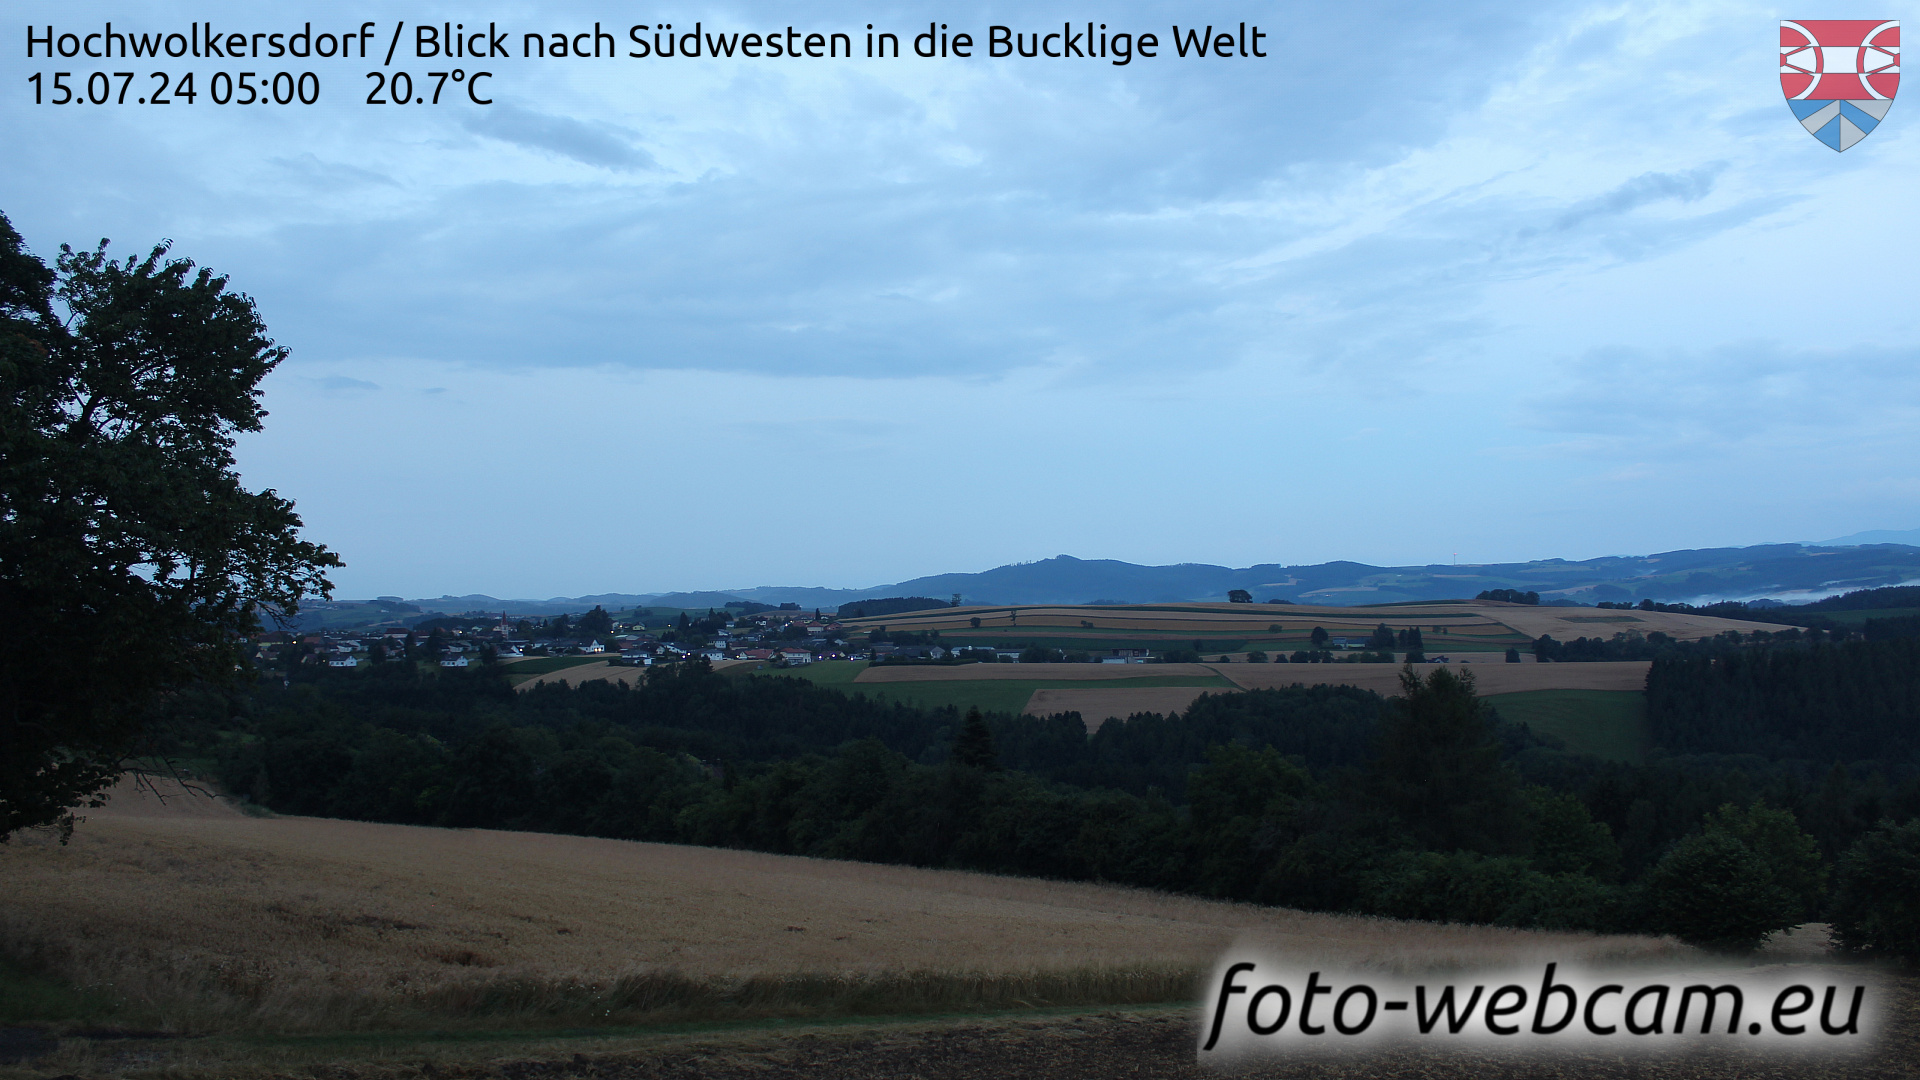 Hochwolkersdorf Thu. 05:03